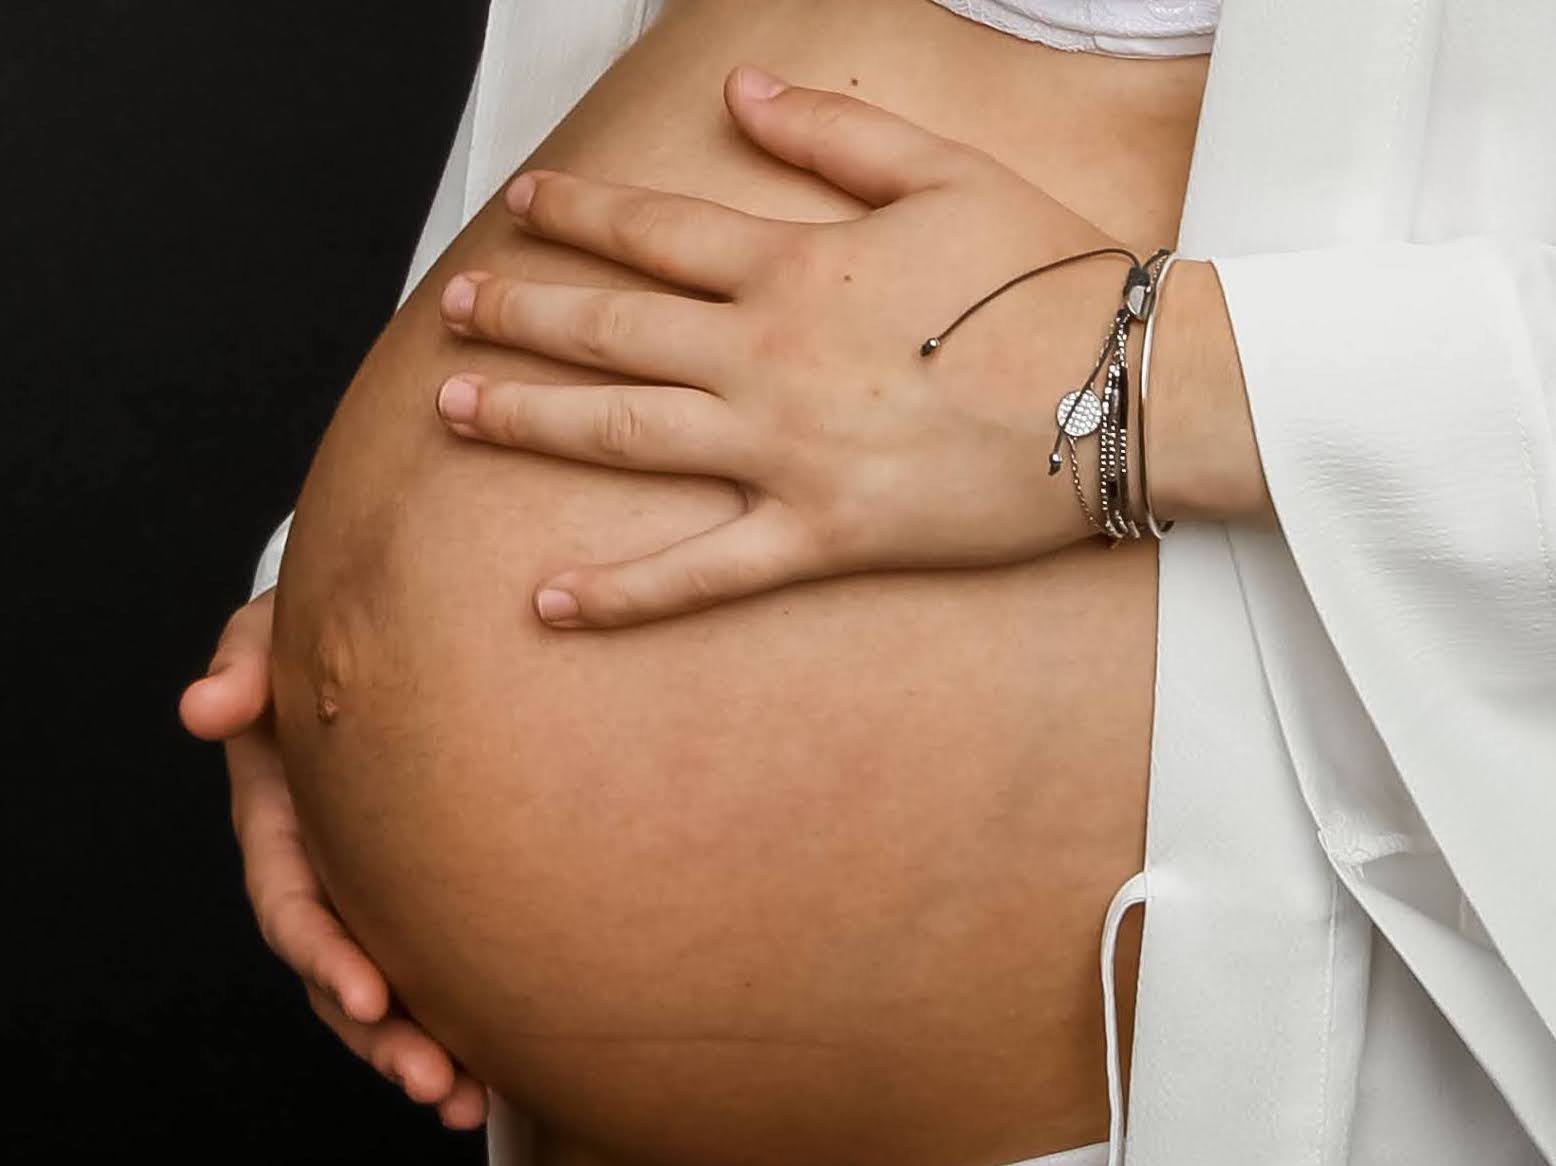 Comment prévenir les vergetures pendant la grossesse ?